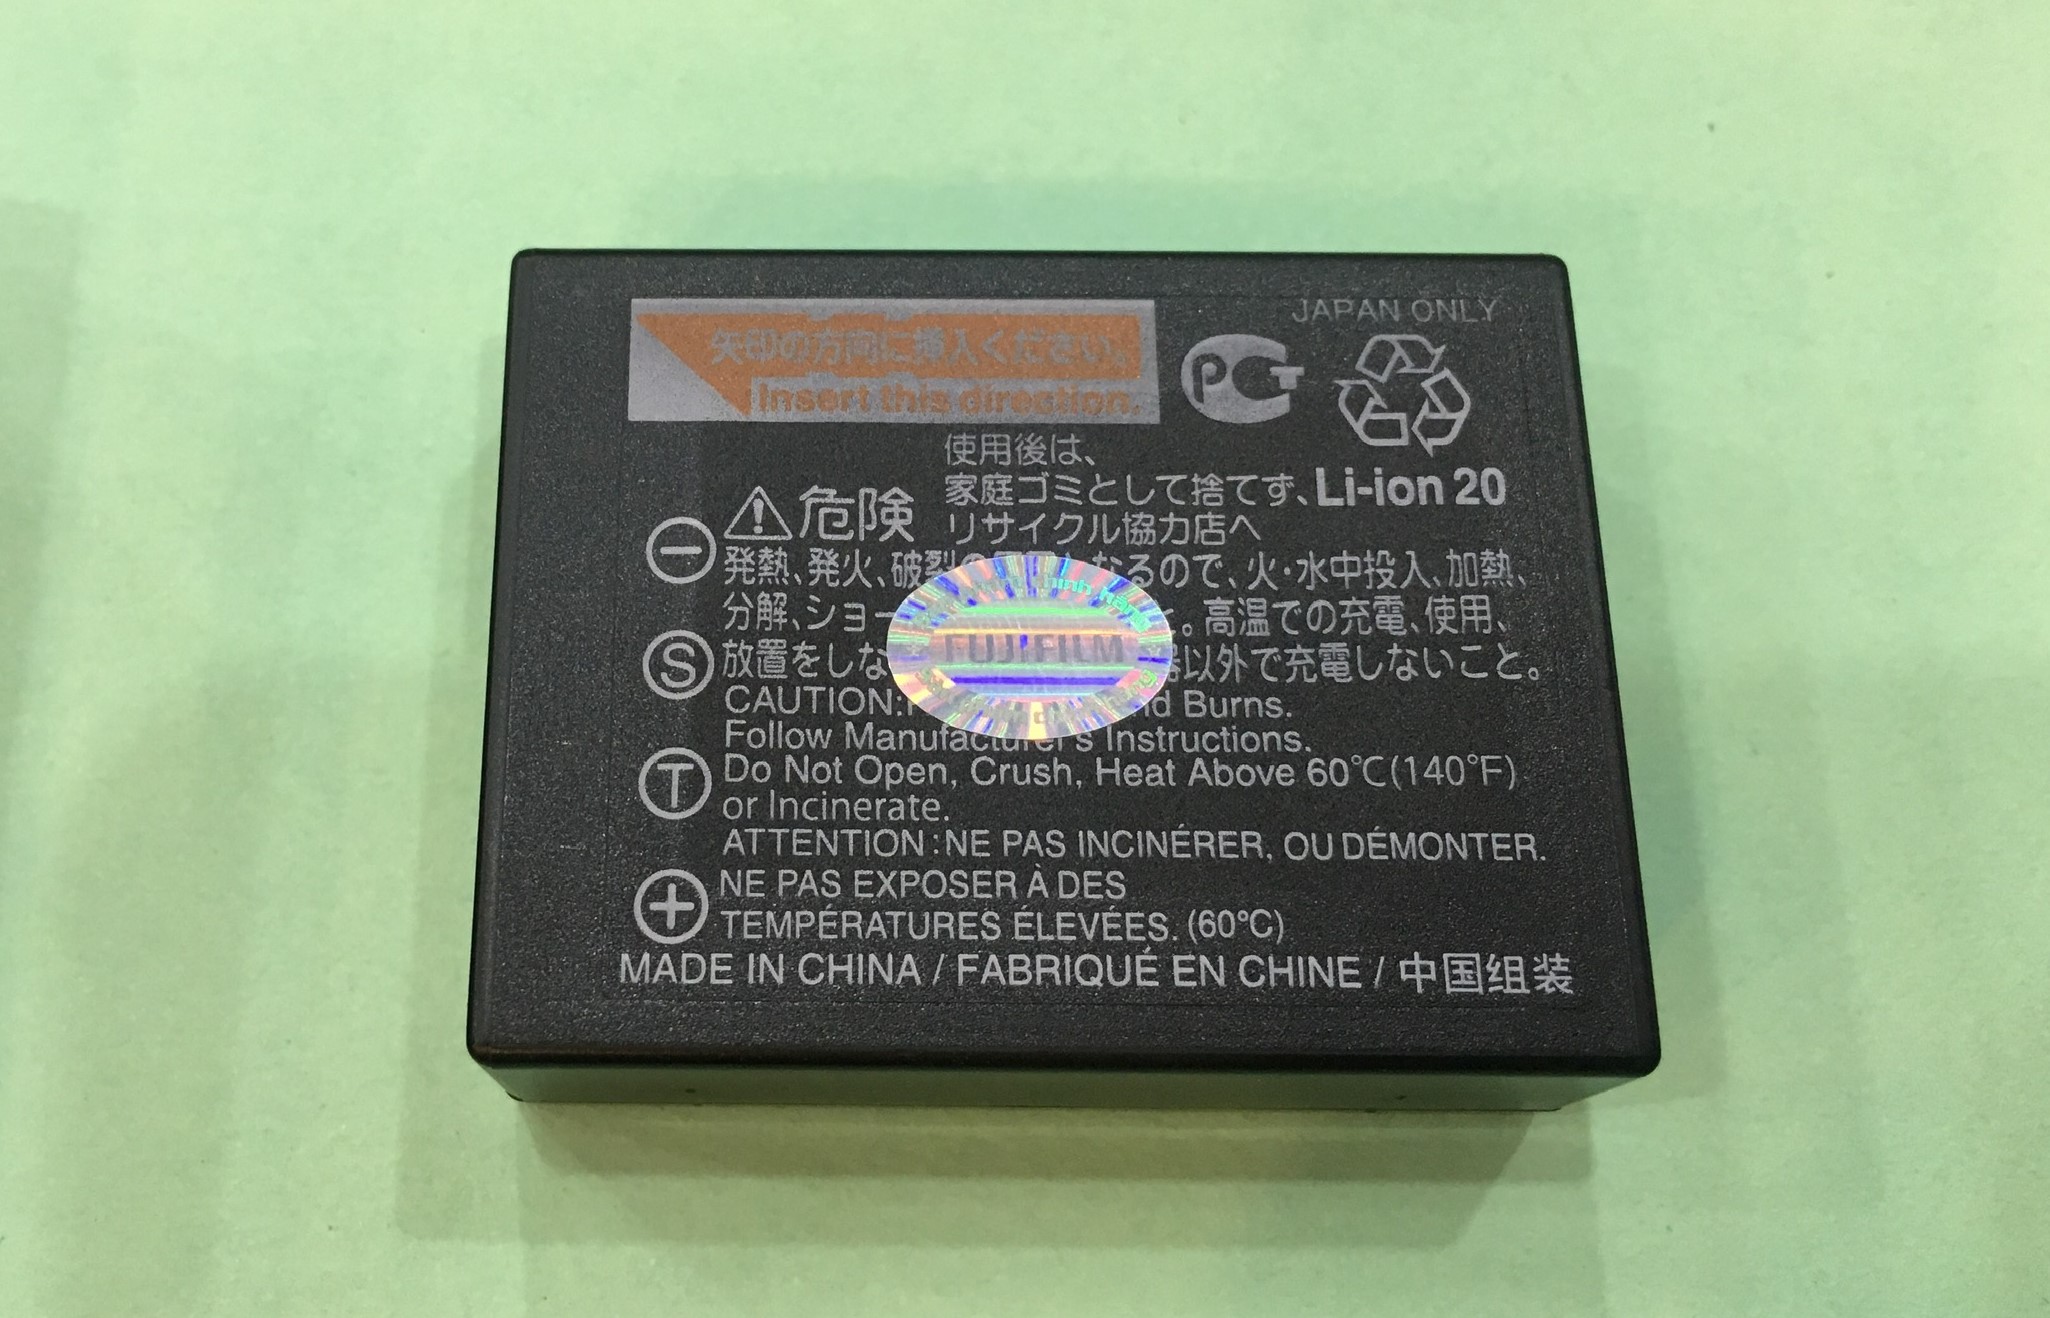 Pin Fujifilm NP-W126S _ Hàng Chính Hãng  (For X-H1 / X-Pro3 / X-T3 / X-T2 / X-T30 / X-T20 / X-T200 / X-T100 / X-E3 / X-A7 / X-A5 / X100V / X100F)